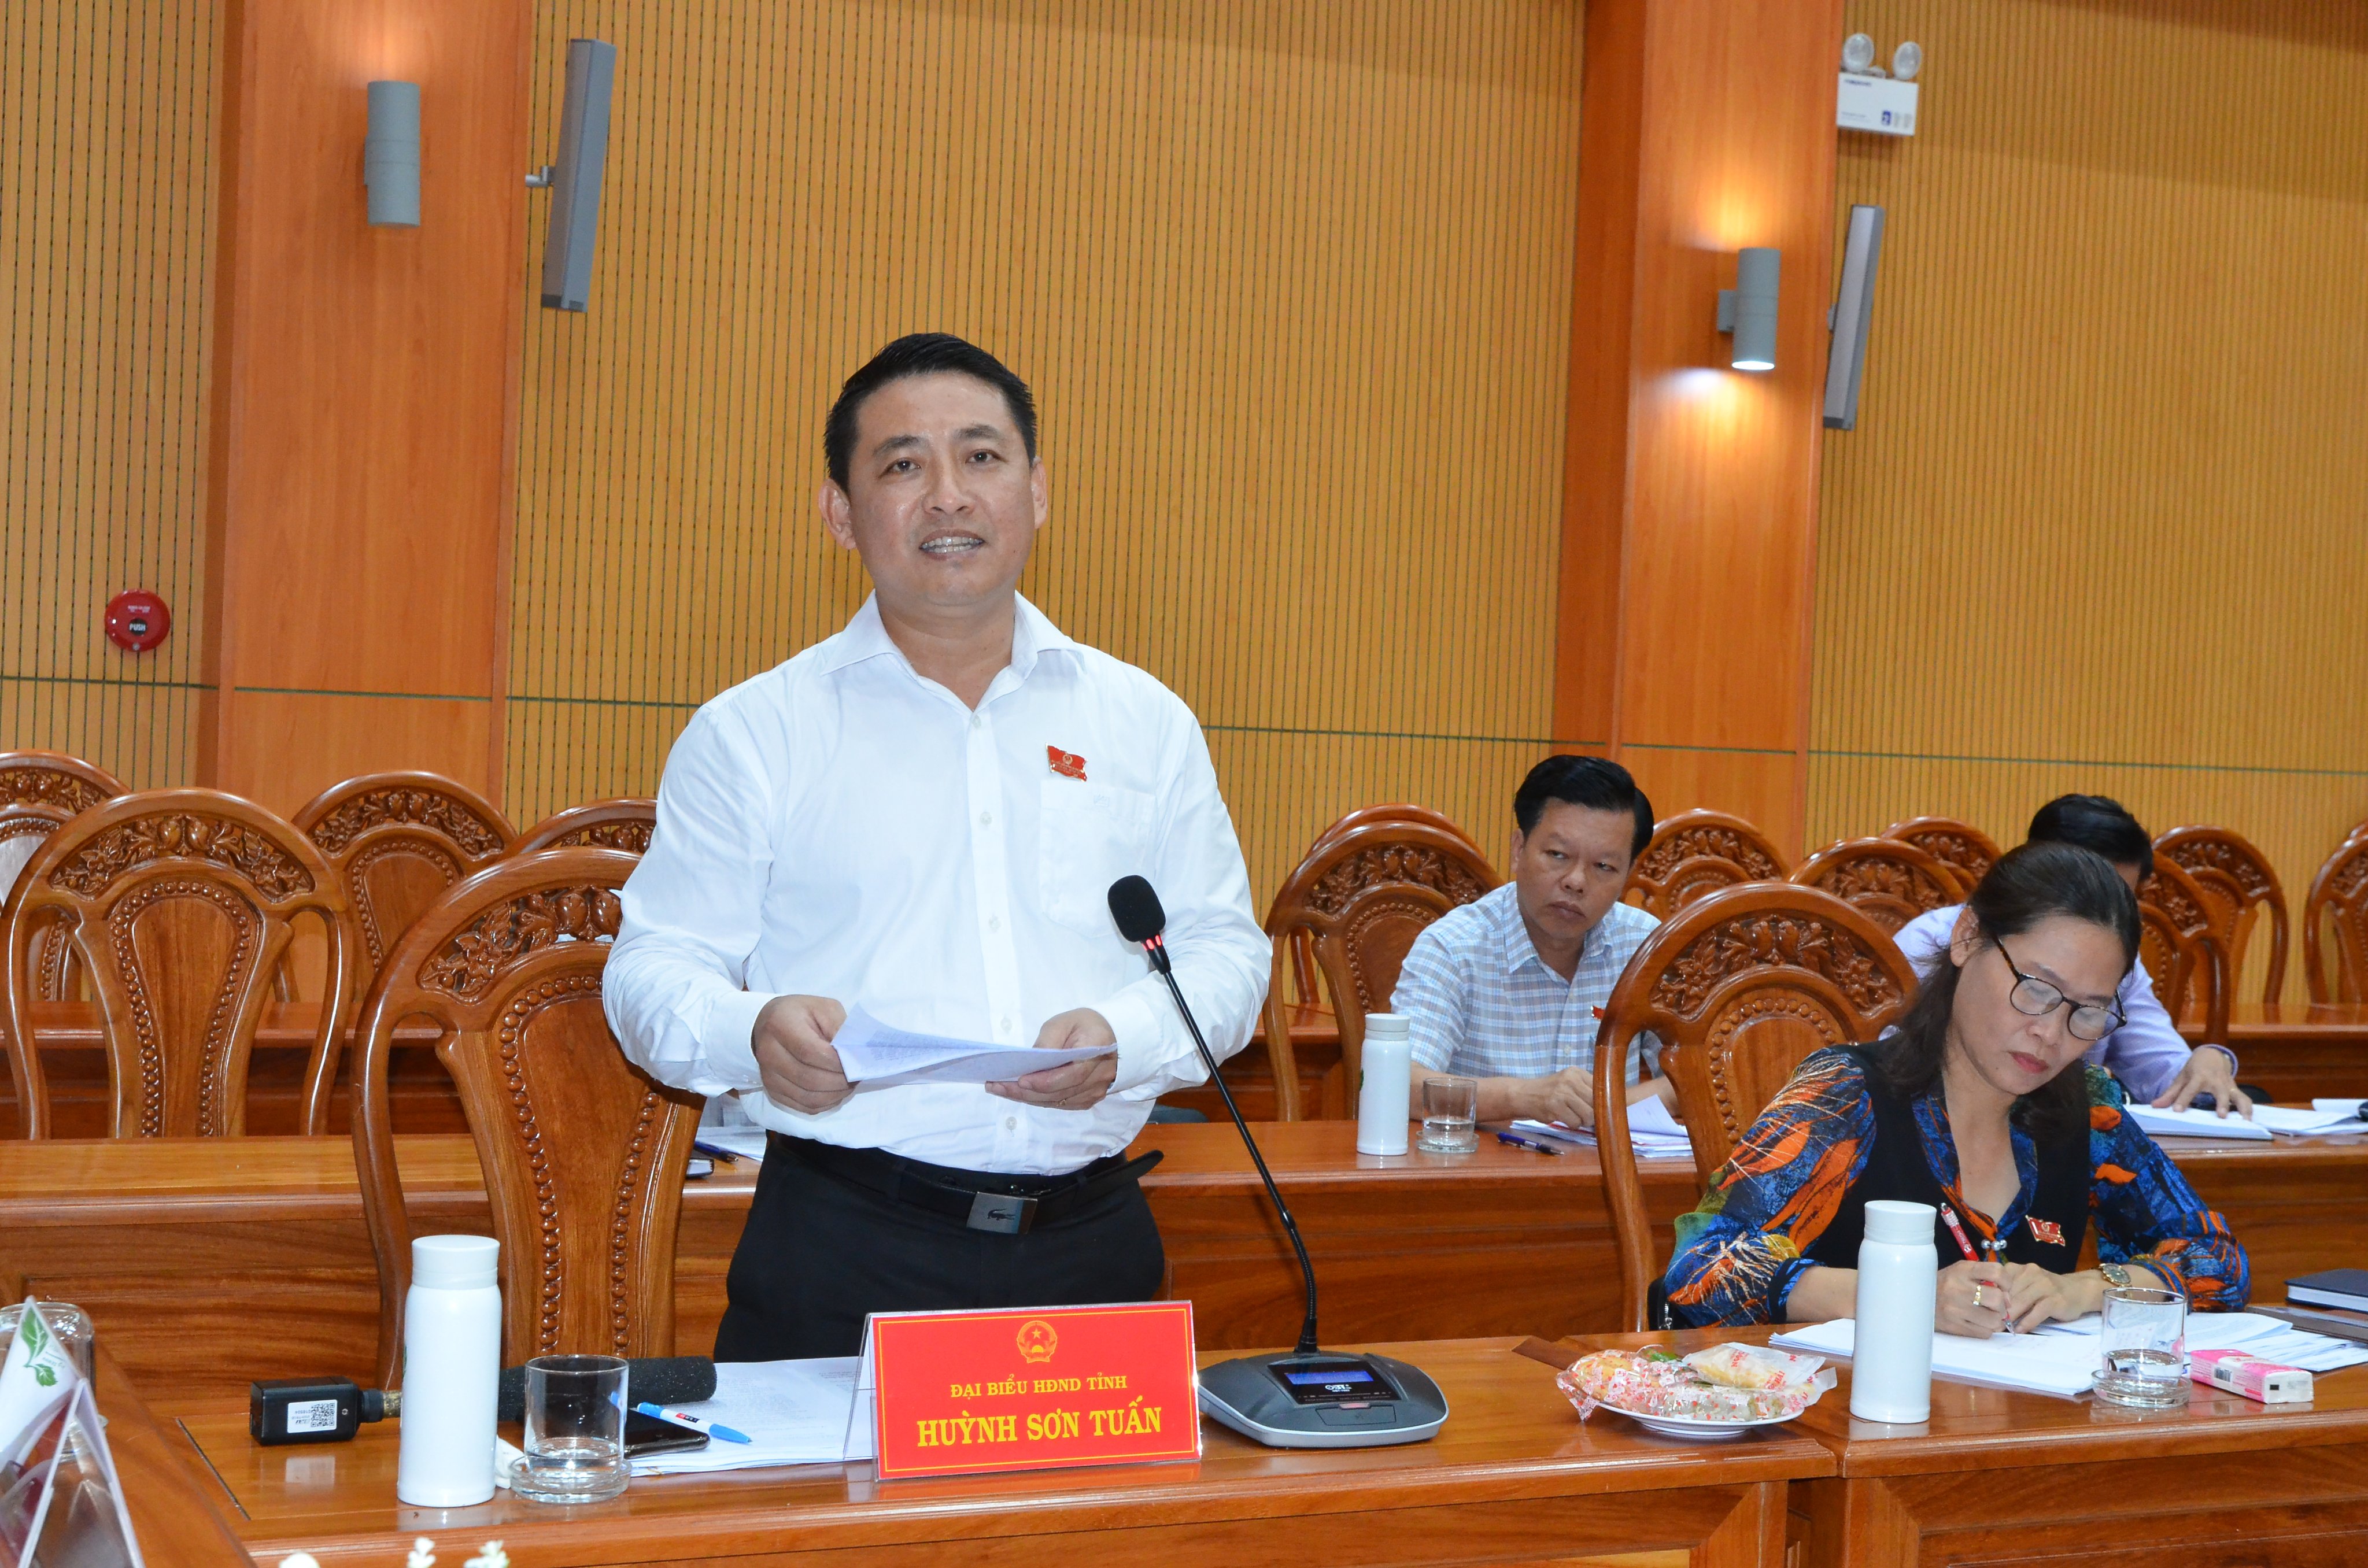 Đại biểu Huỳnh Sơn Tuấn, Chủ tịch LĐLĐ tỉnh đề nghị cần tăng cường định hướng, phân luồng và đào tạo nghề cho HS, SV. Ảnh: CẨM NHUNG